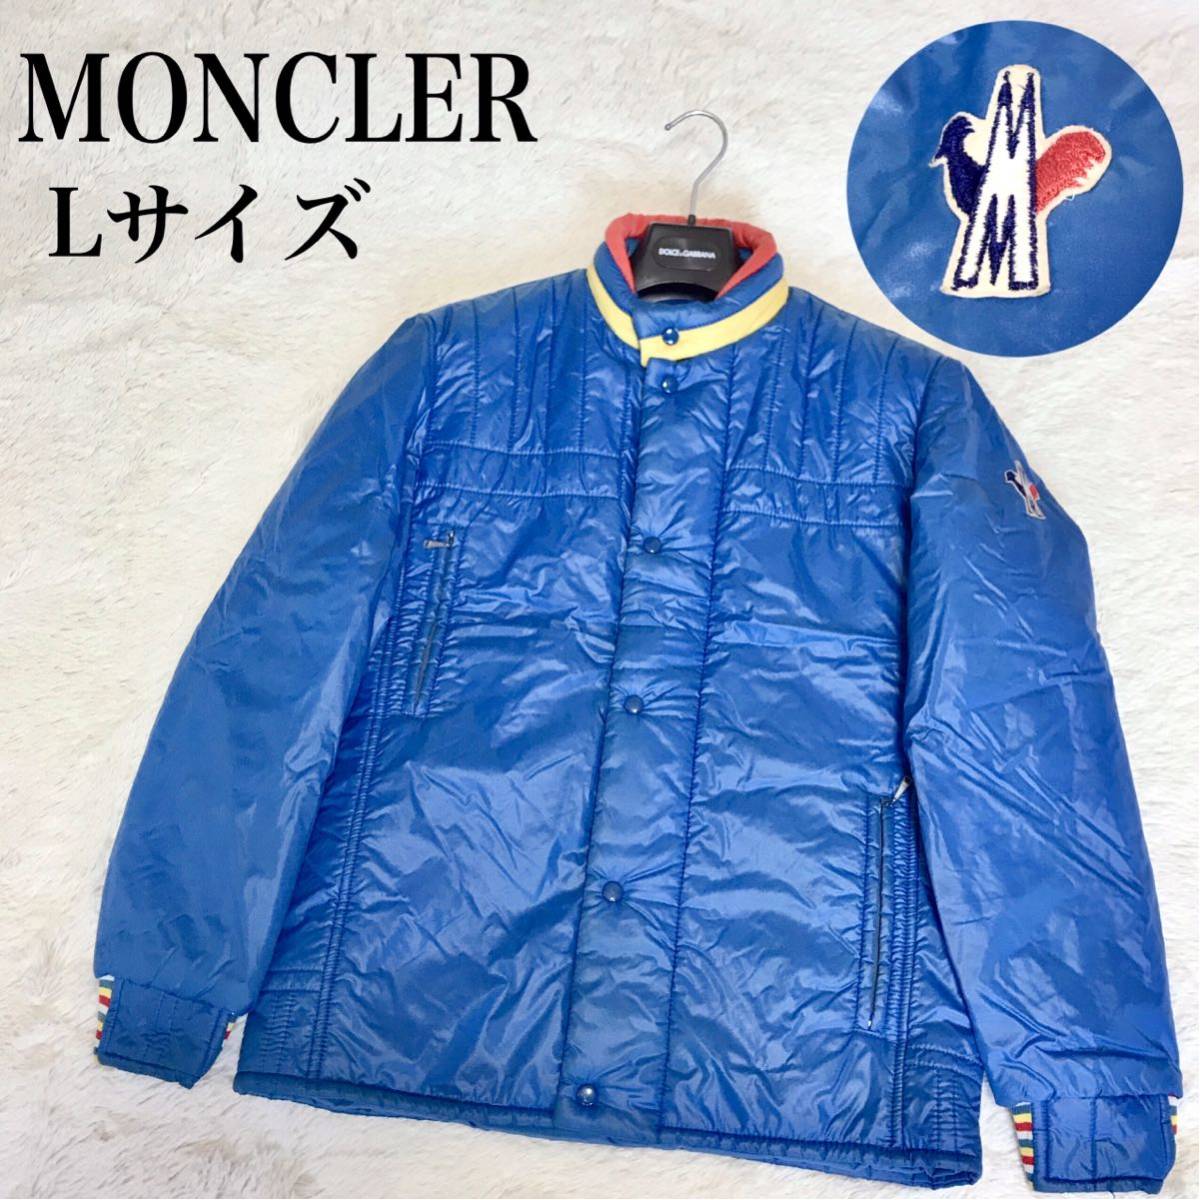 希少 MONCLER Lサイズ パデットブルゾン フード ダウンジャケット 青 モンクレール アウター メンズ ジャケット